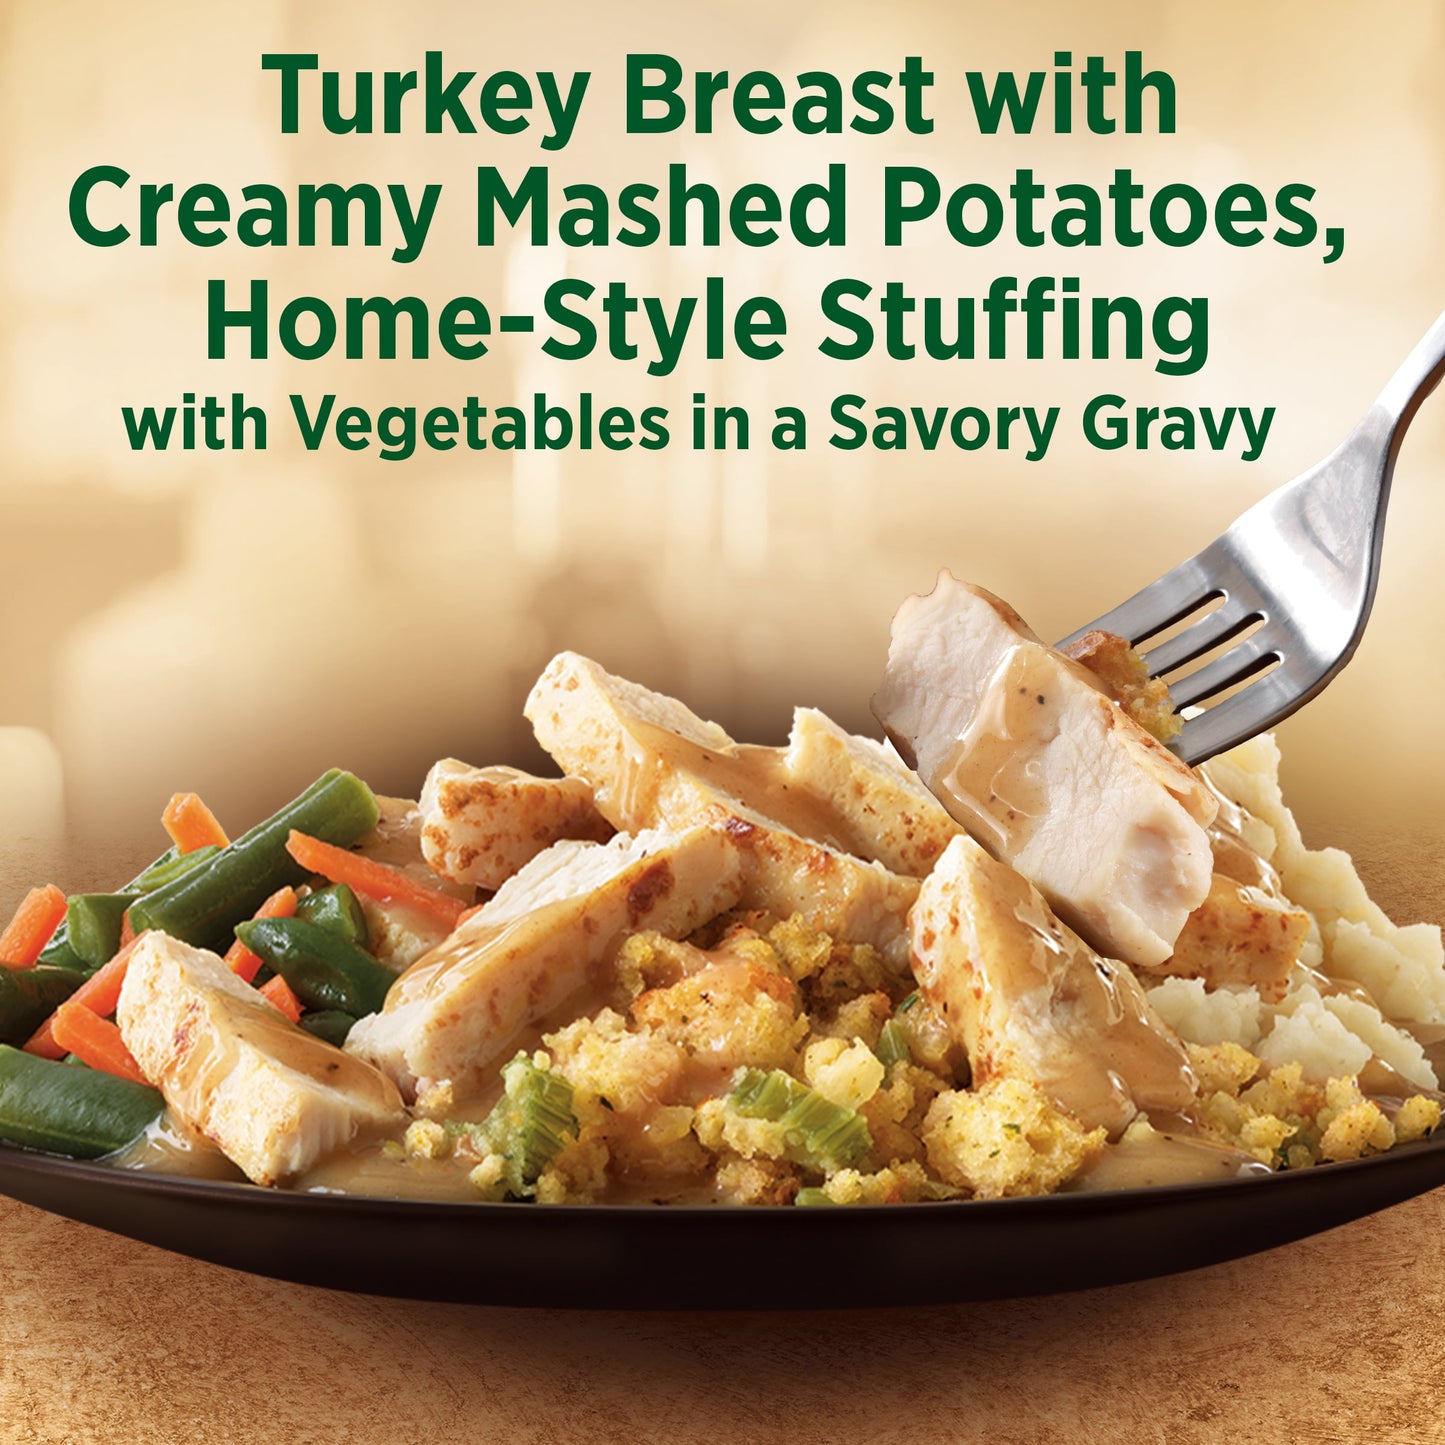 Marie Callender's Roasted Turkey Breast & Stuffing Frozen Meal, 11.5 oz (Frozen)